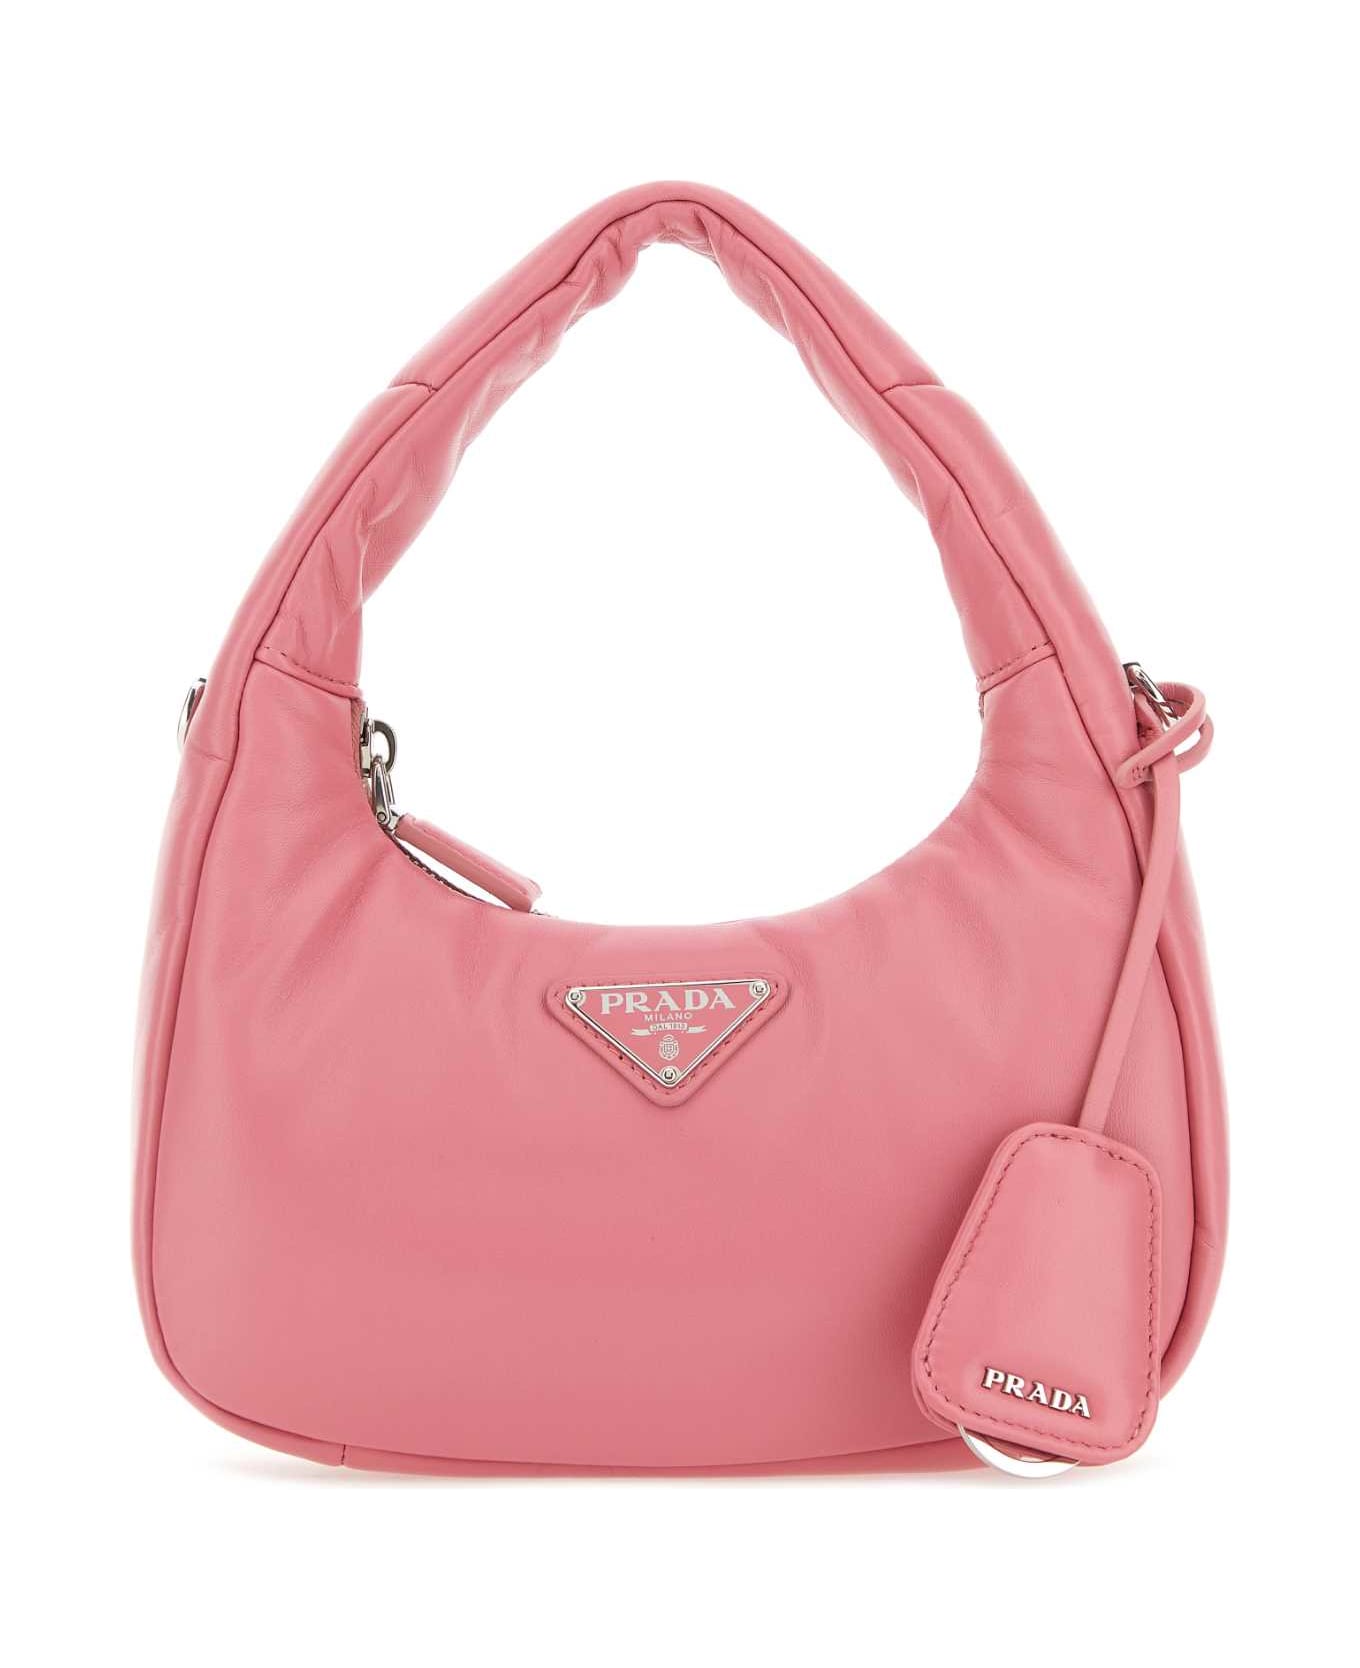 Prada Pink Nappa Leather Mini Prada Soft Handbag - GERANIO